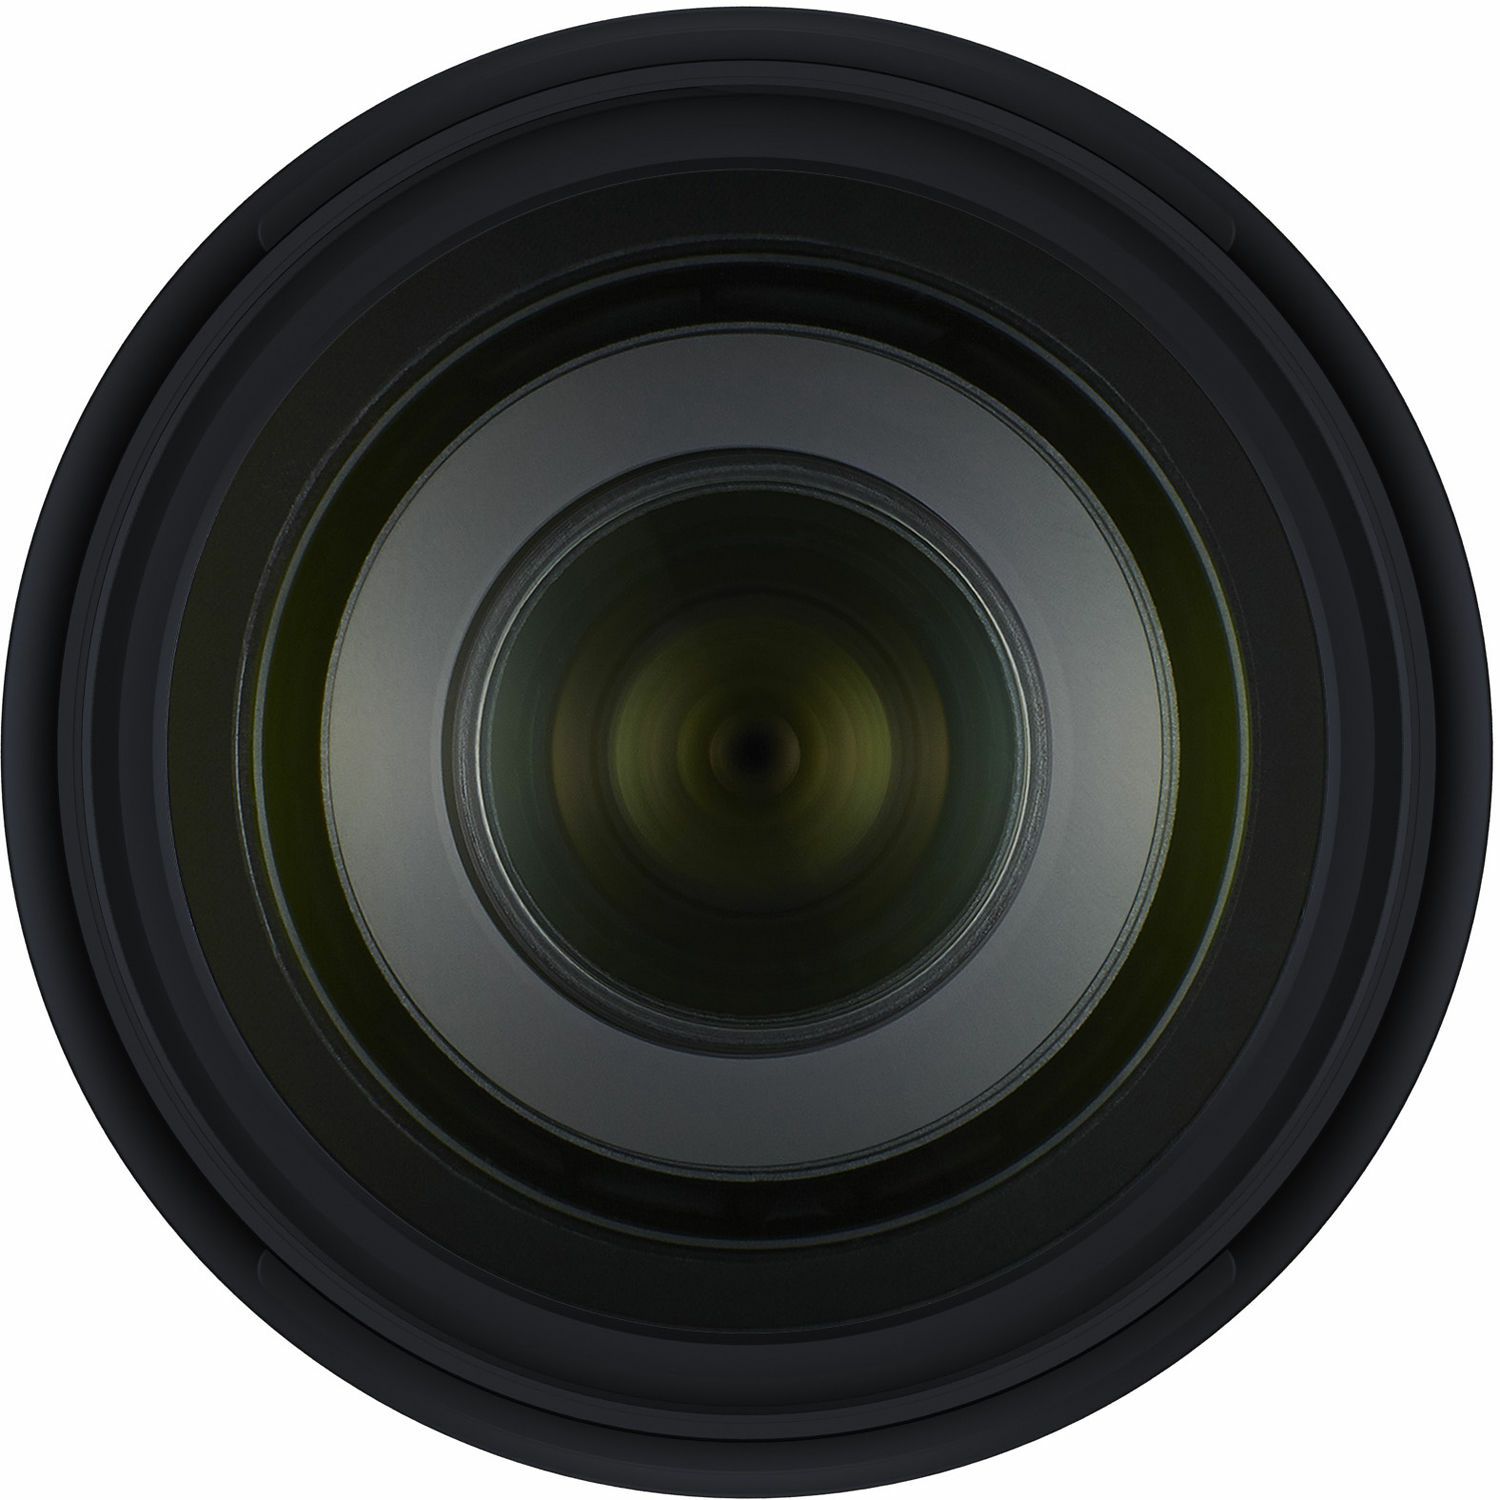 Tamron 70-210mm f/4 Di VC USD telefoto objektiv za Canon EF (A034E)